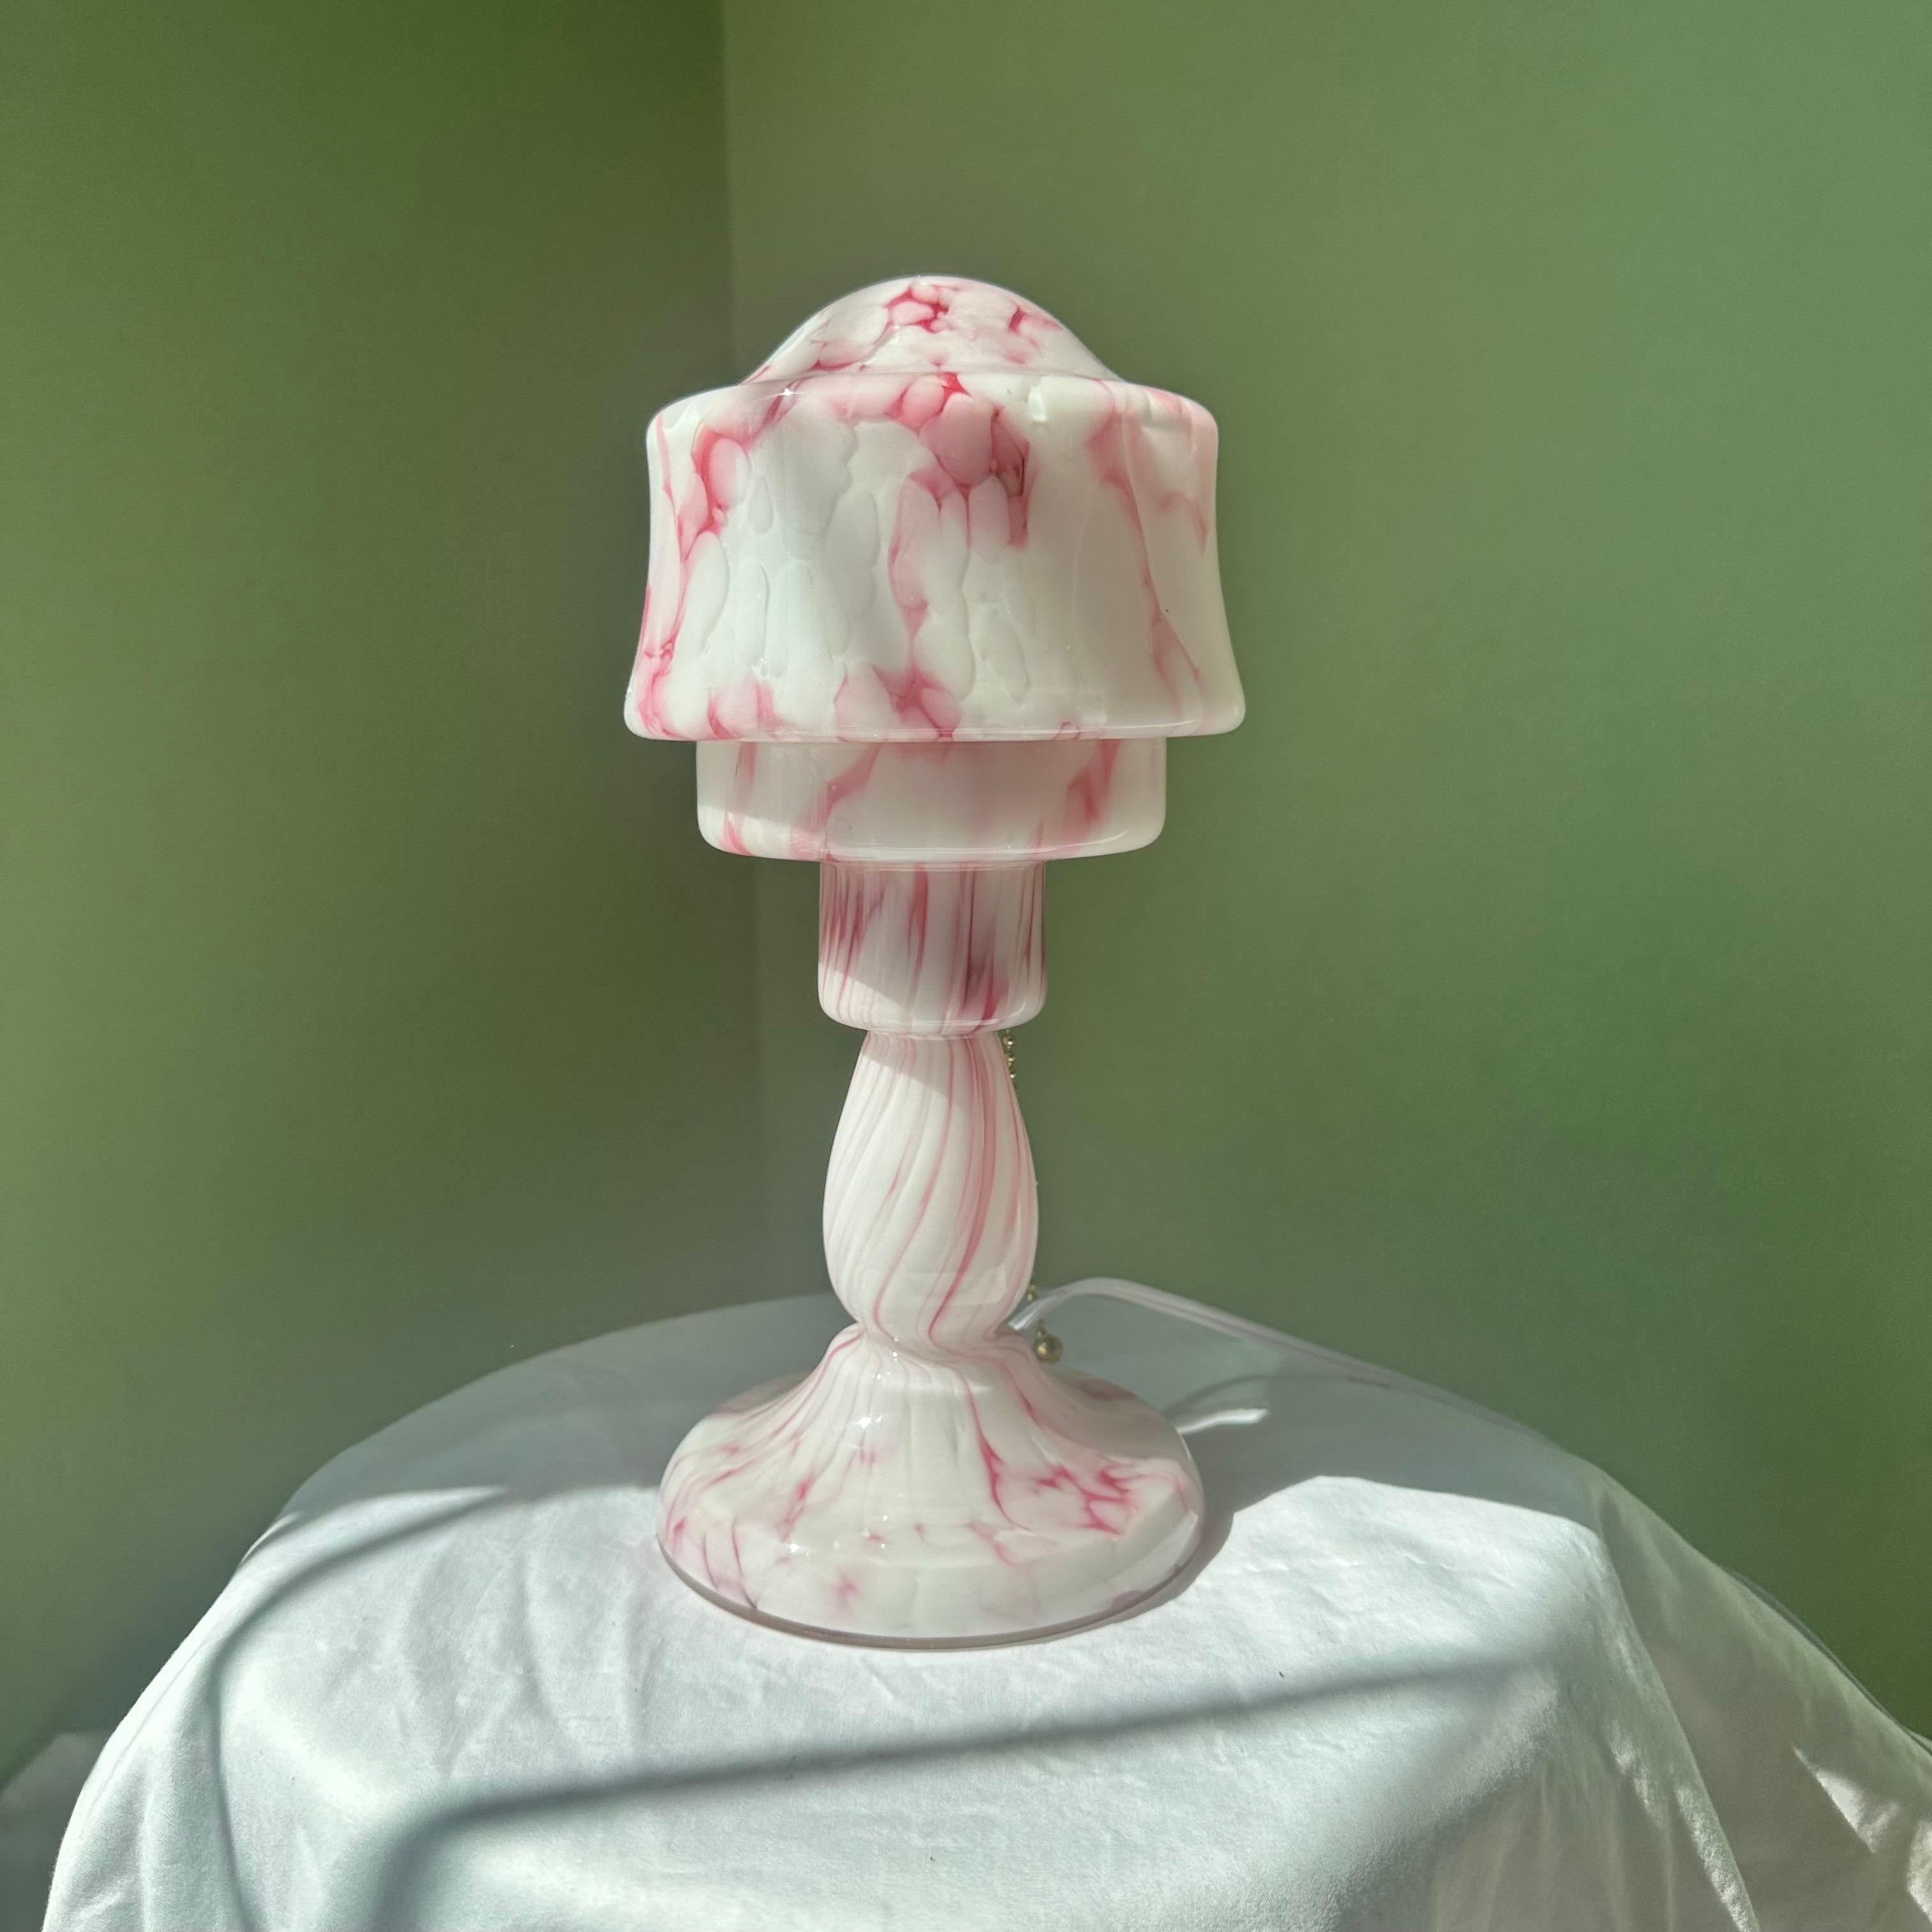 Rosa und weiße Modernist Art Deco Glas Pilz Tischlampe. Kleine funktionalistische, stromlinienförmige Art-Déco-Pilz-Tischlampe oder Schreibtischlampe. Modernistischer Stil mit rosafarbenem und weißem, milchigem Pressglas mit marmorierten